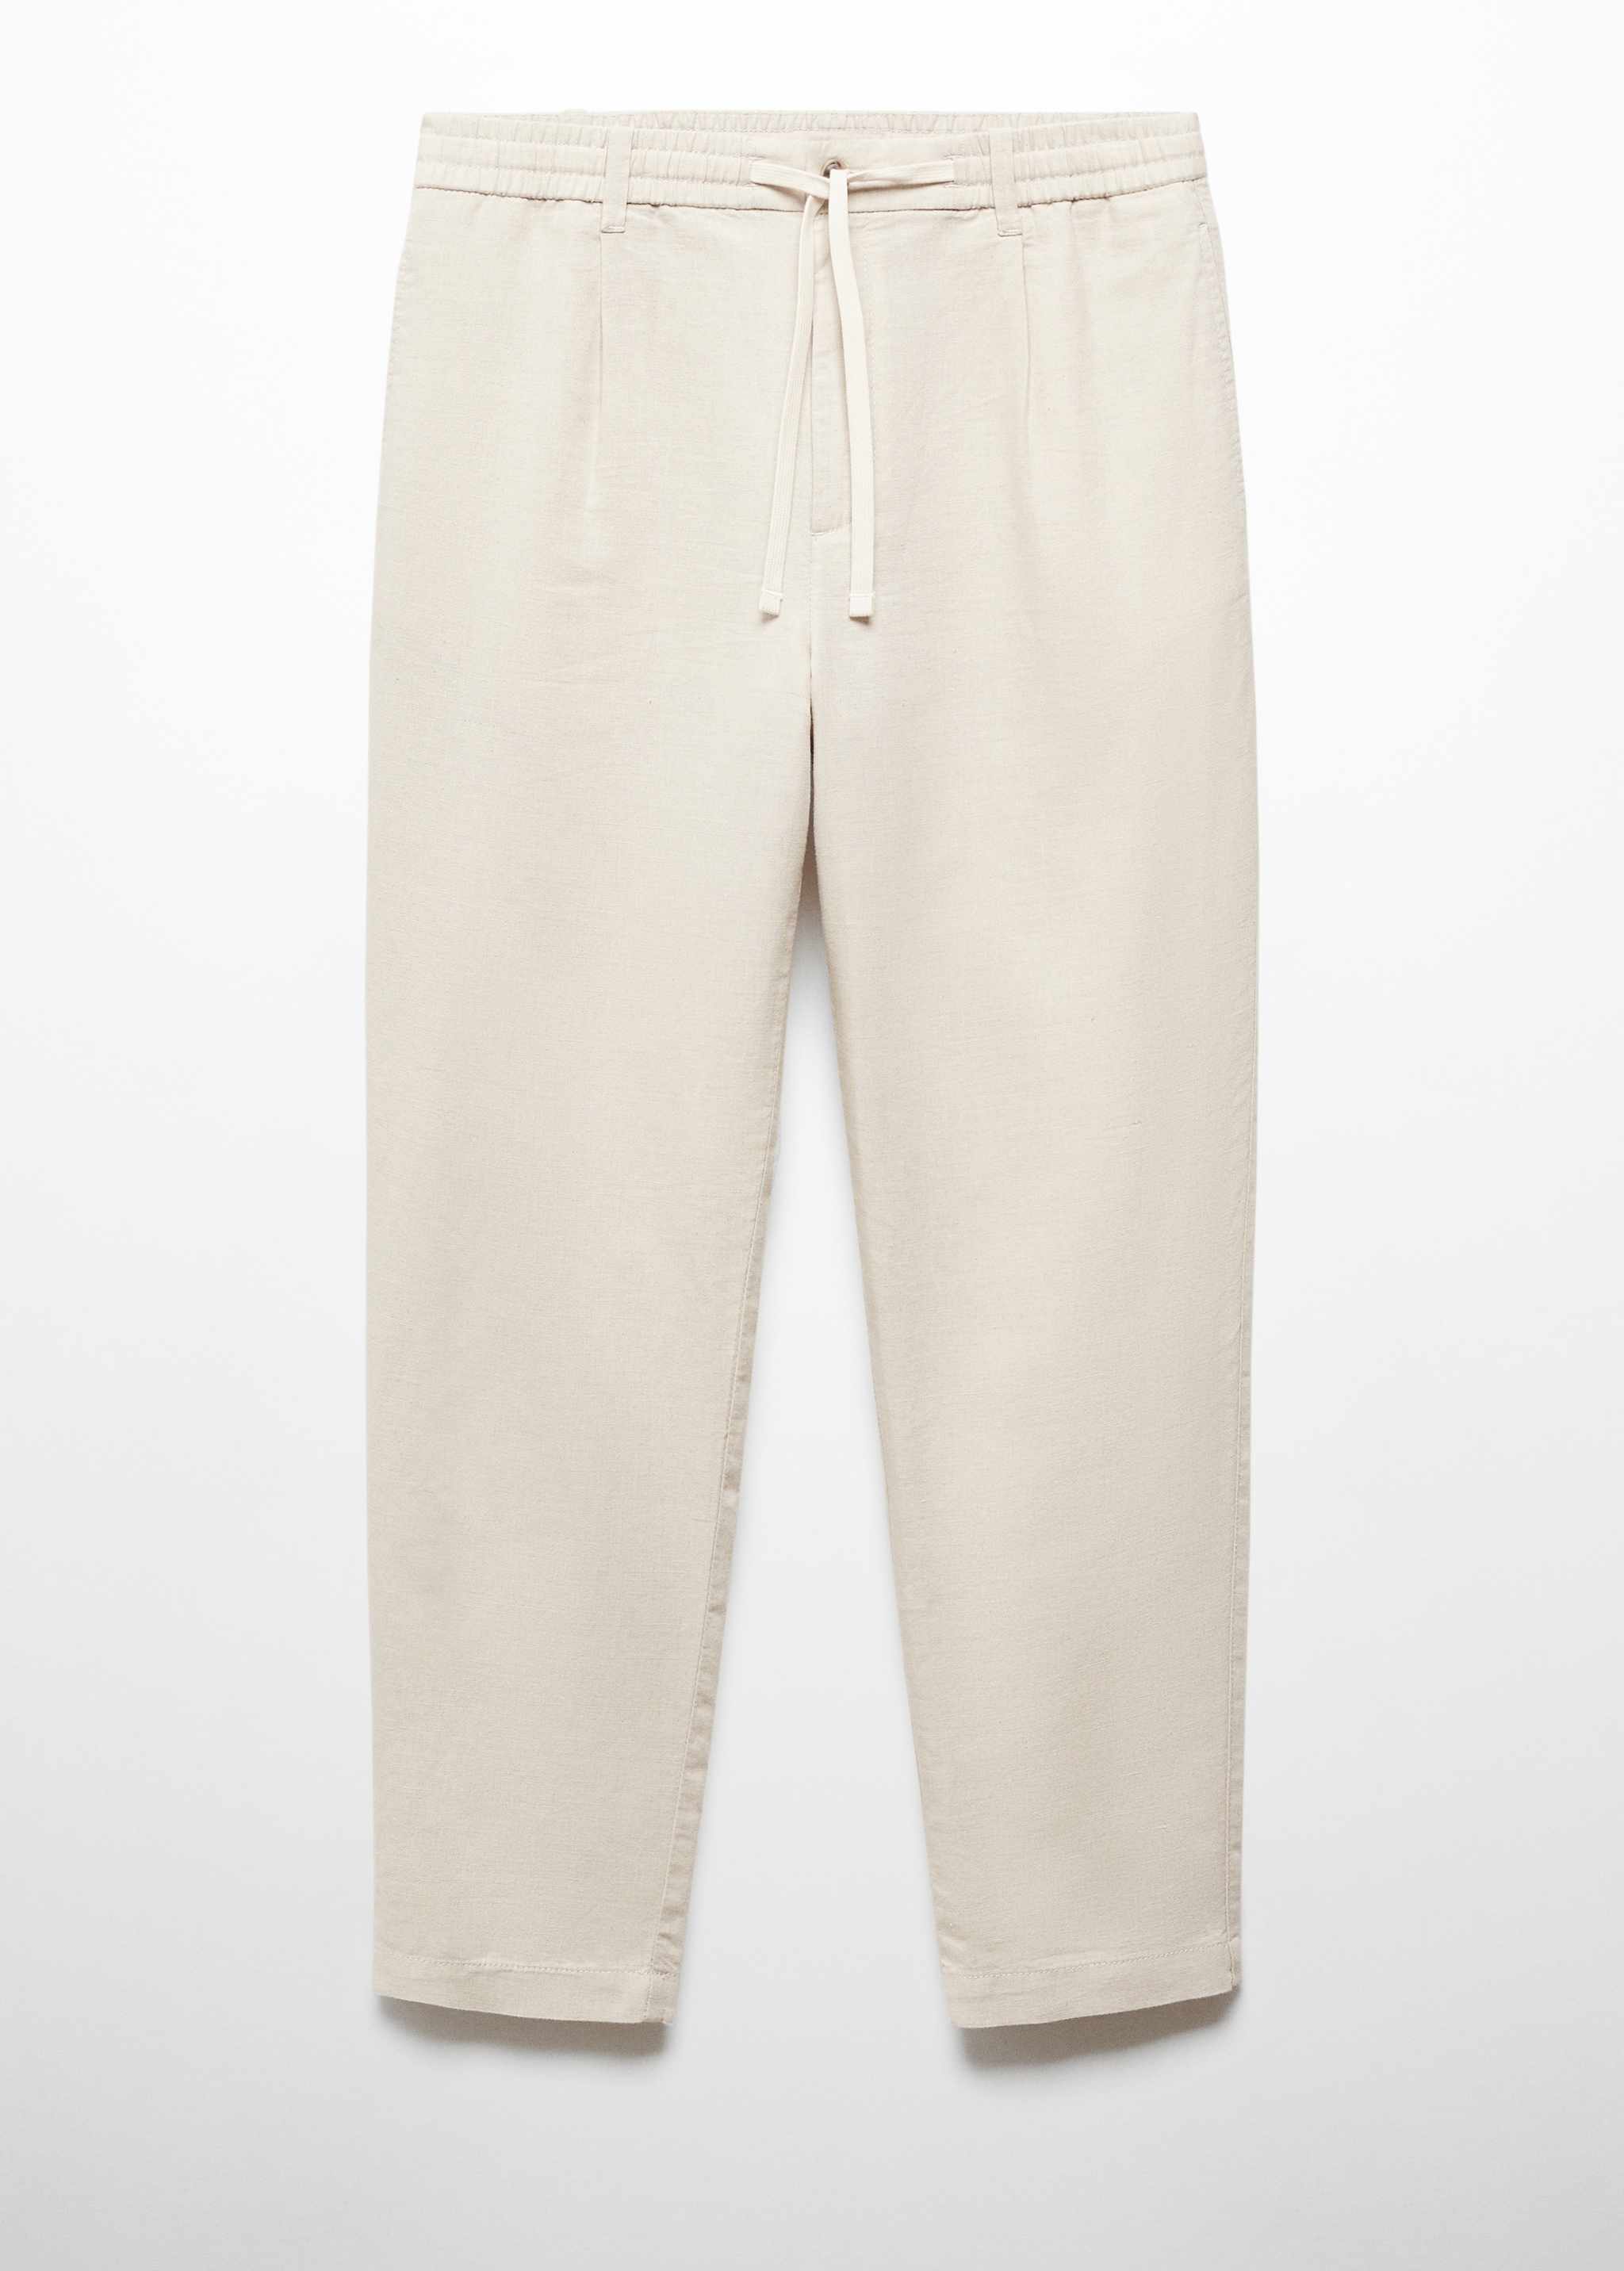 Pantalón slim fit lino cordón - Artículo sin modelo